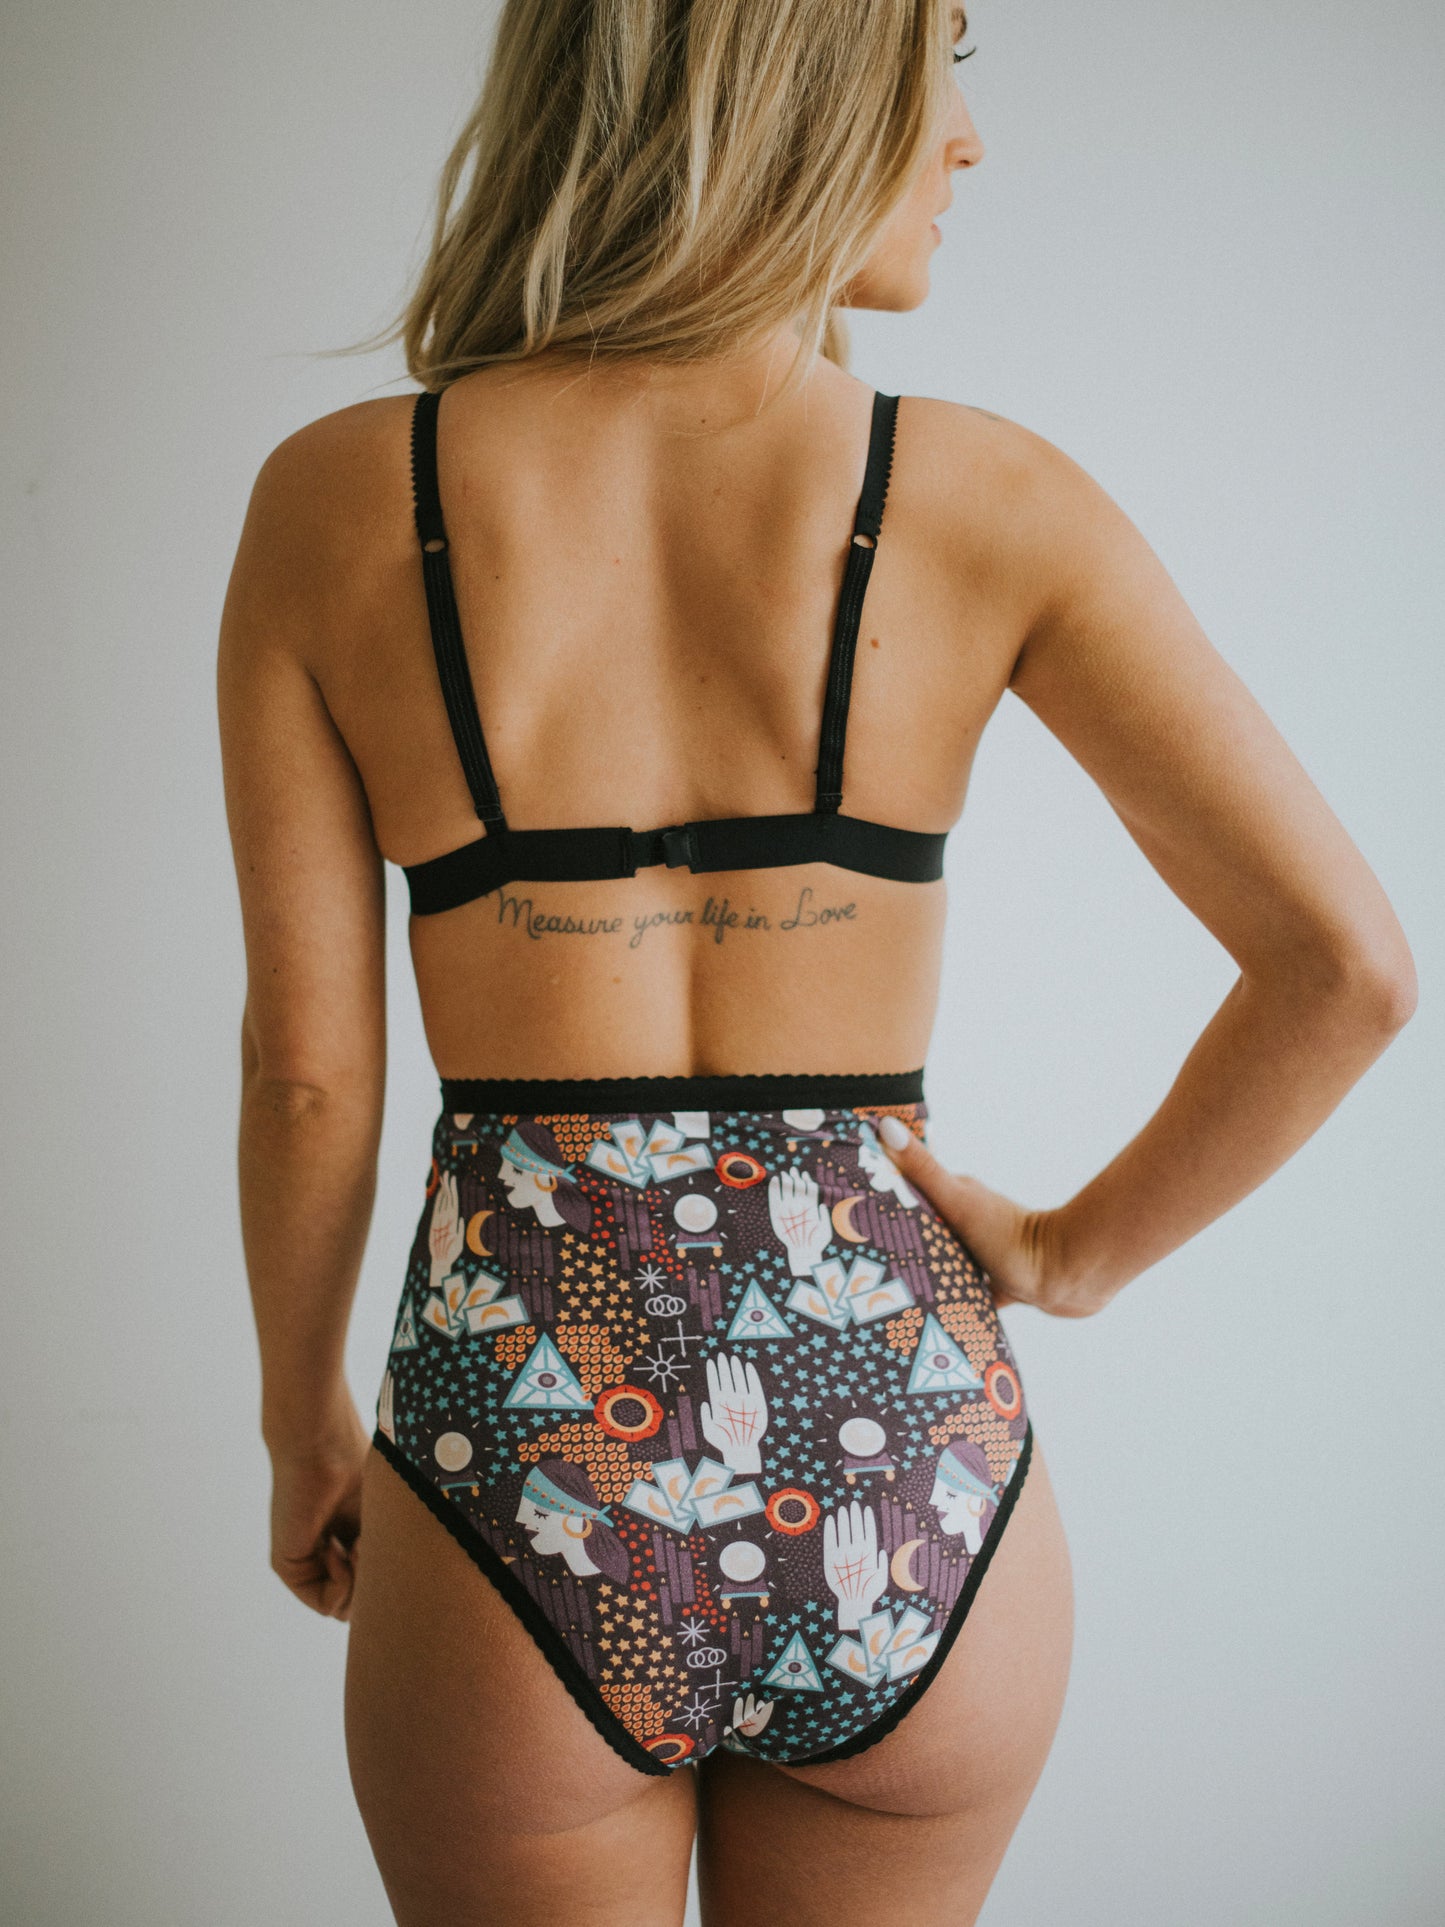 Tarot Underwear | Fortuner teller print cotton underwear by Coven Intimates